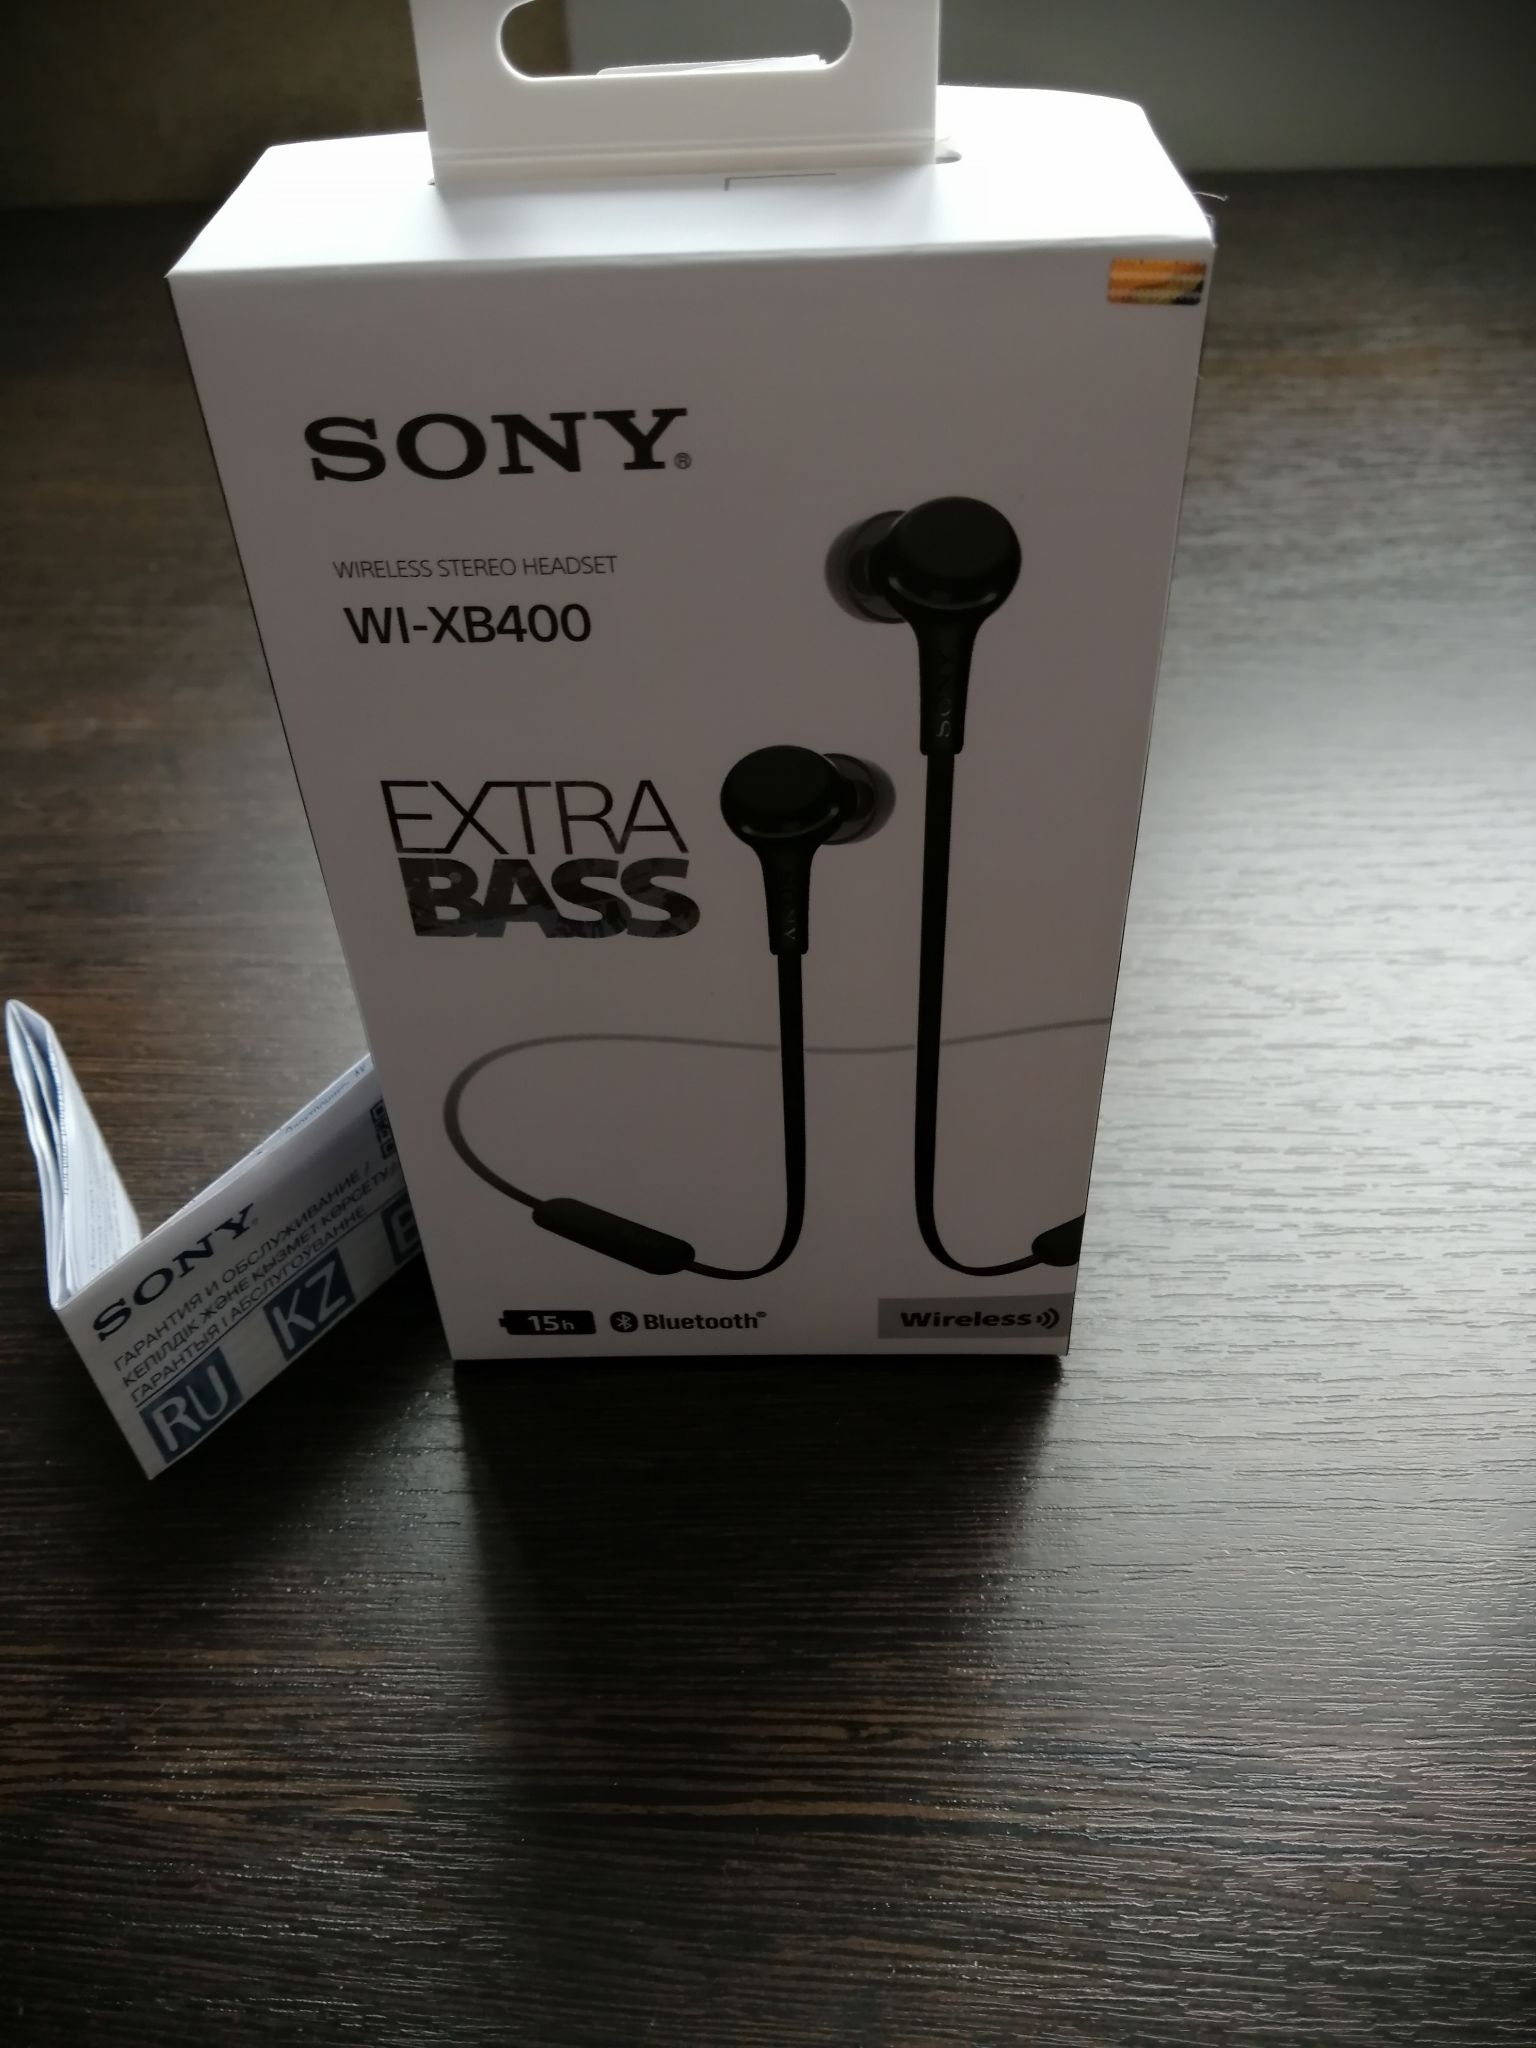 Xb400 sony купить. Sony Wi-xb400. Наушники сони Wi-xb400. Sony Wi-xb400 Extra Bass. Bluetooth гарнитура Sony Wi-xb400.